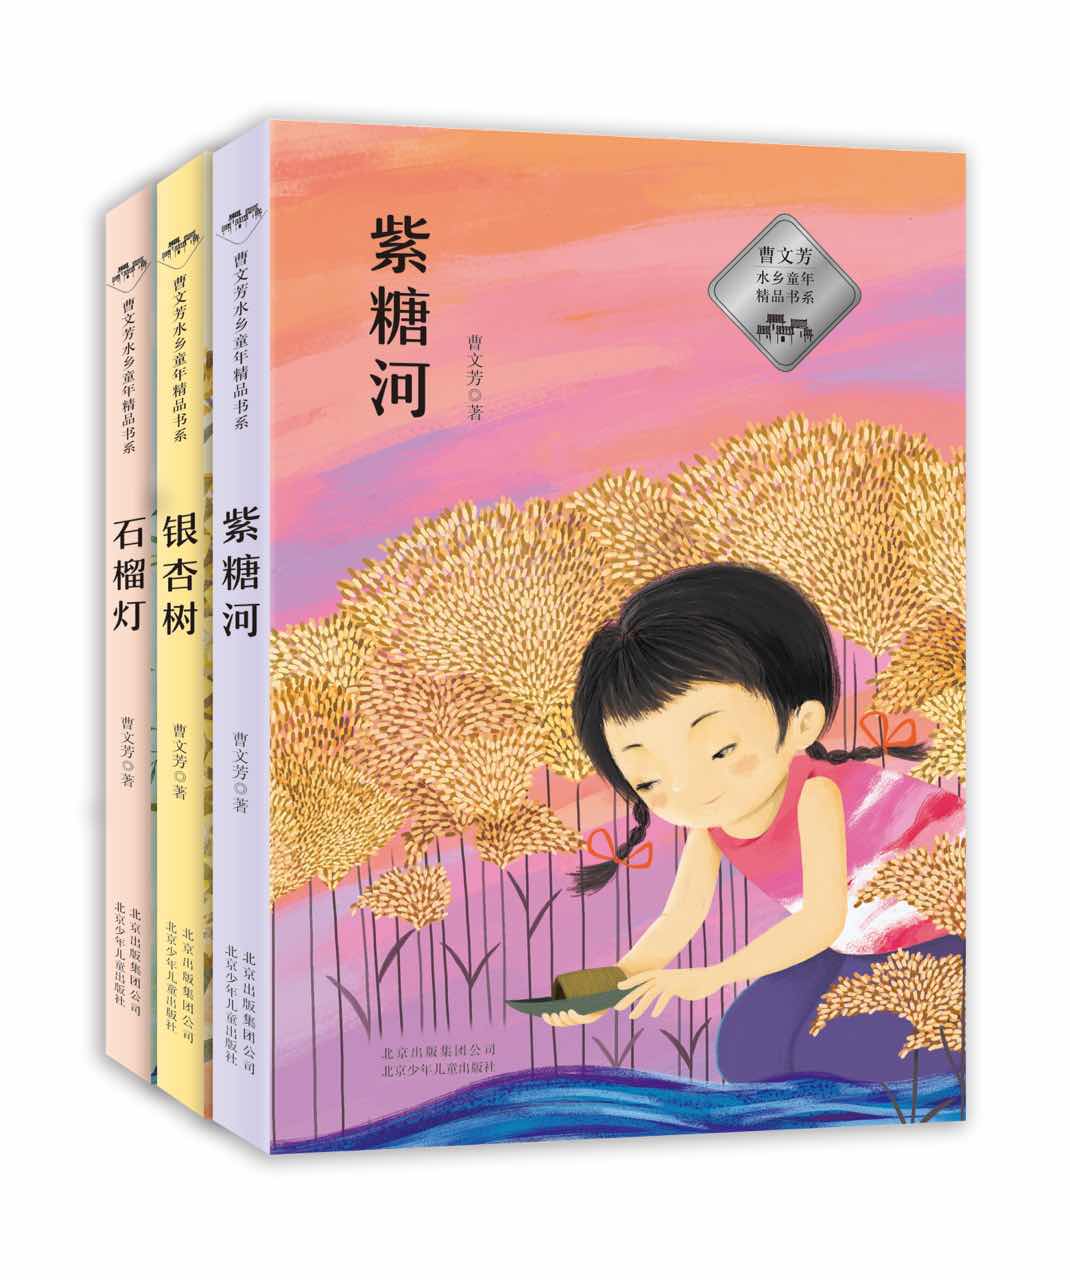 回望文学的故乡:曹文芳水乡童年精品书系研讨